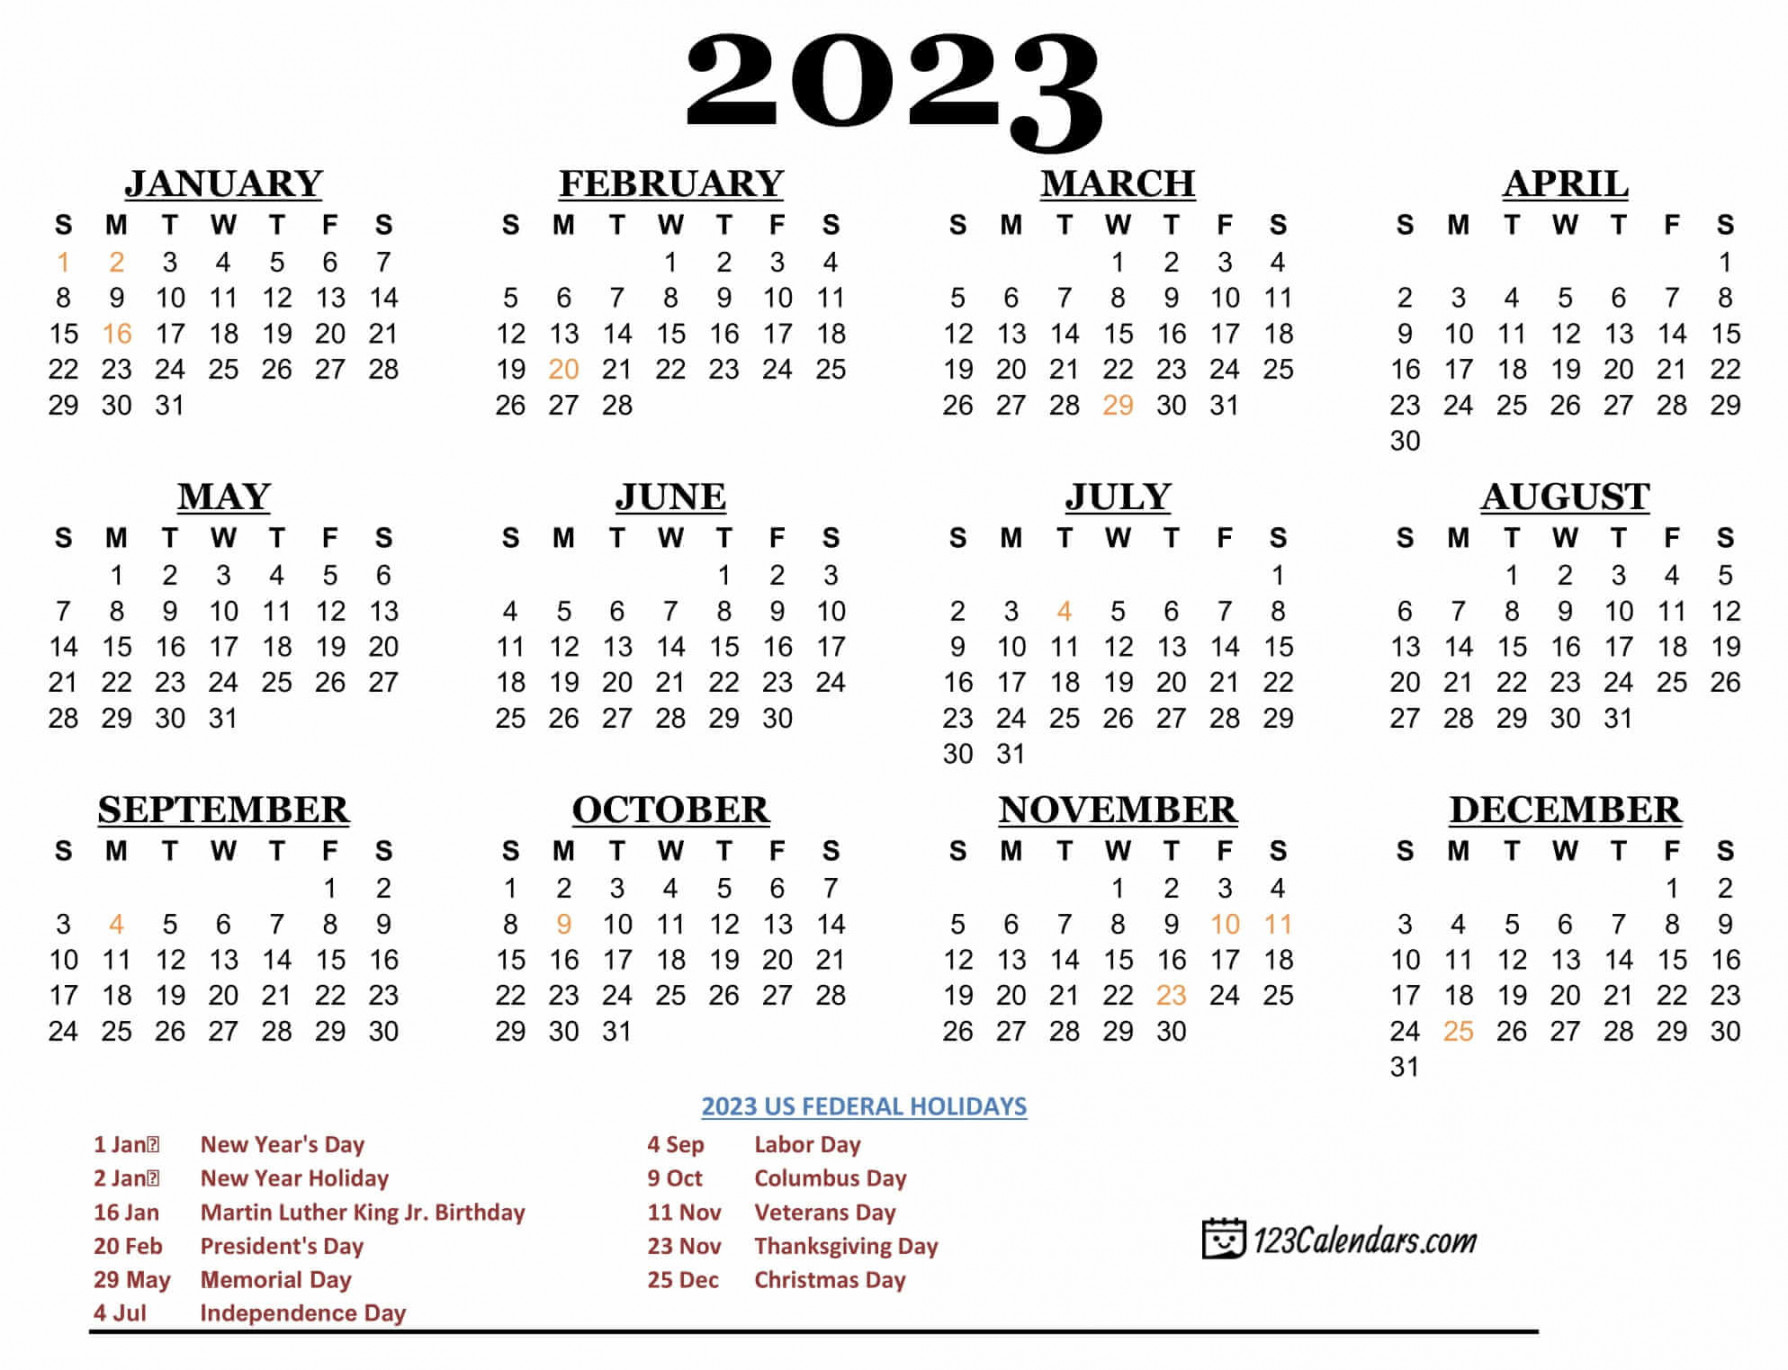 printable calendar calendars com